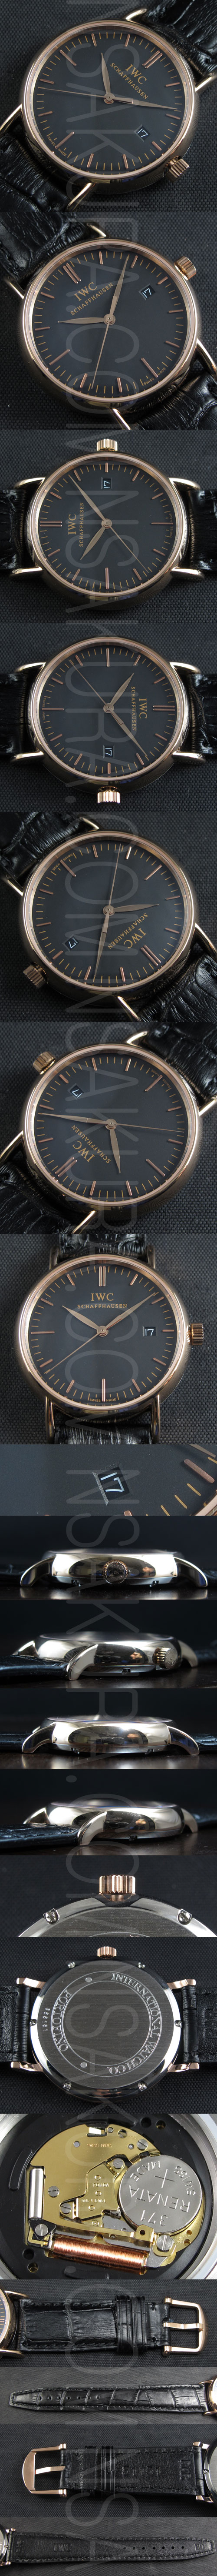 ブランド腕時計コピーIWC ポルトフィーノ(ピンクゴールド素材)